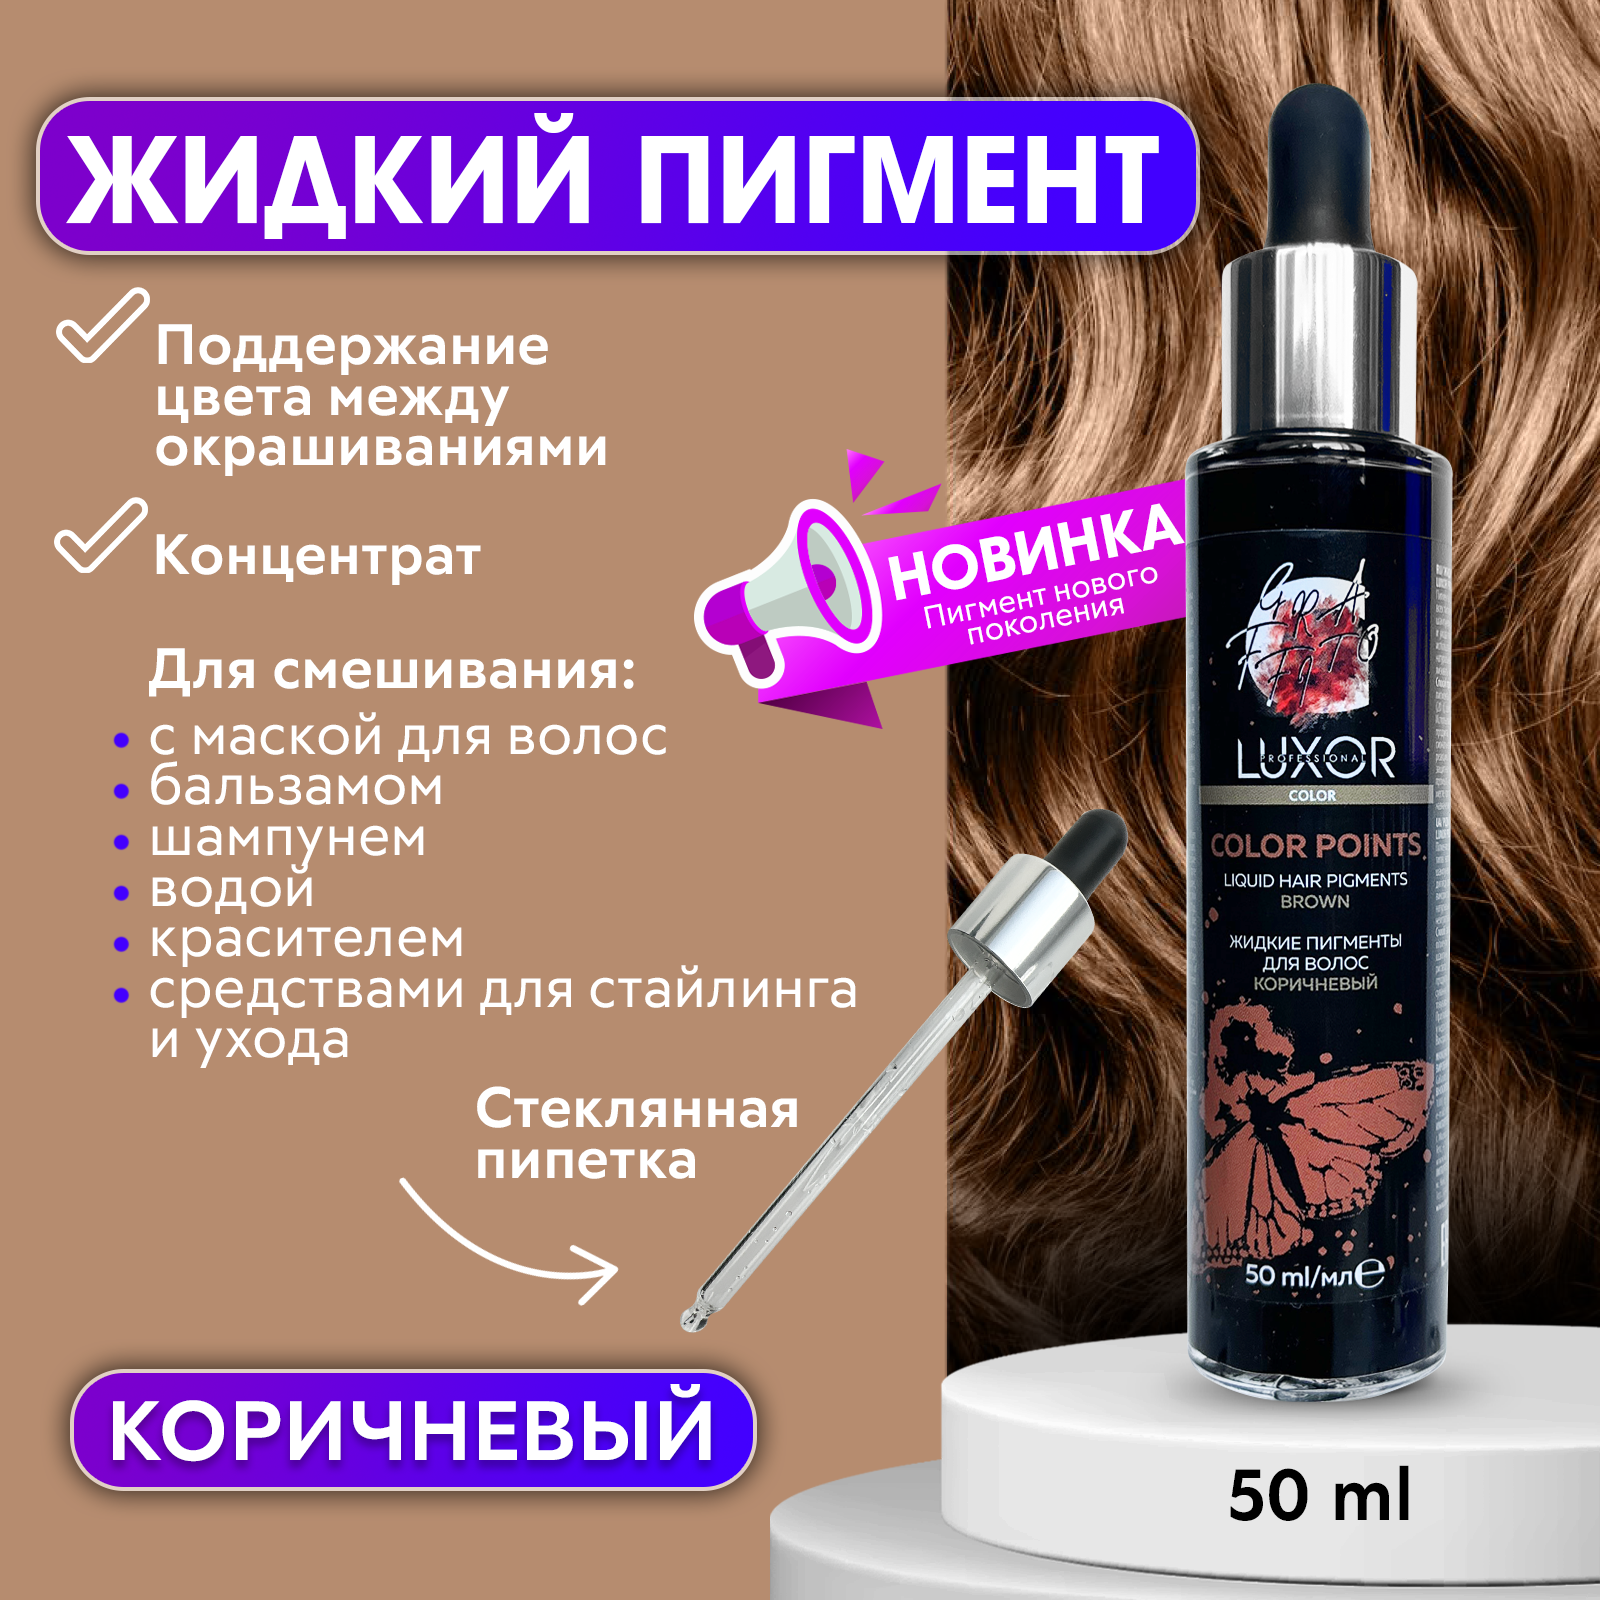 Пигмент Luxor Professional прямого действия для волос 50мл Коричневый